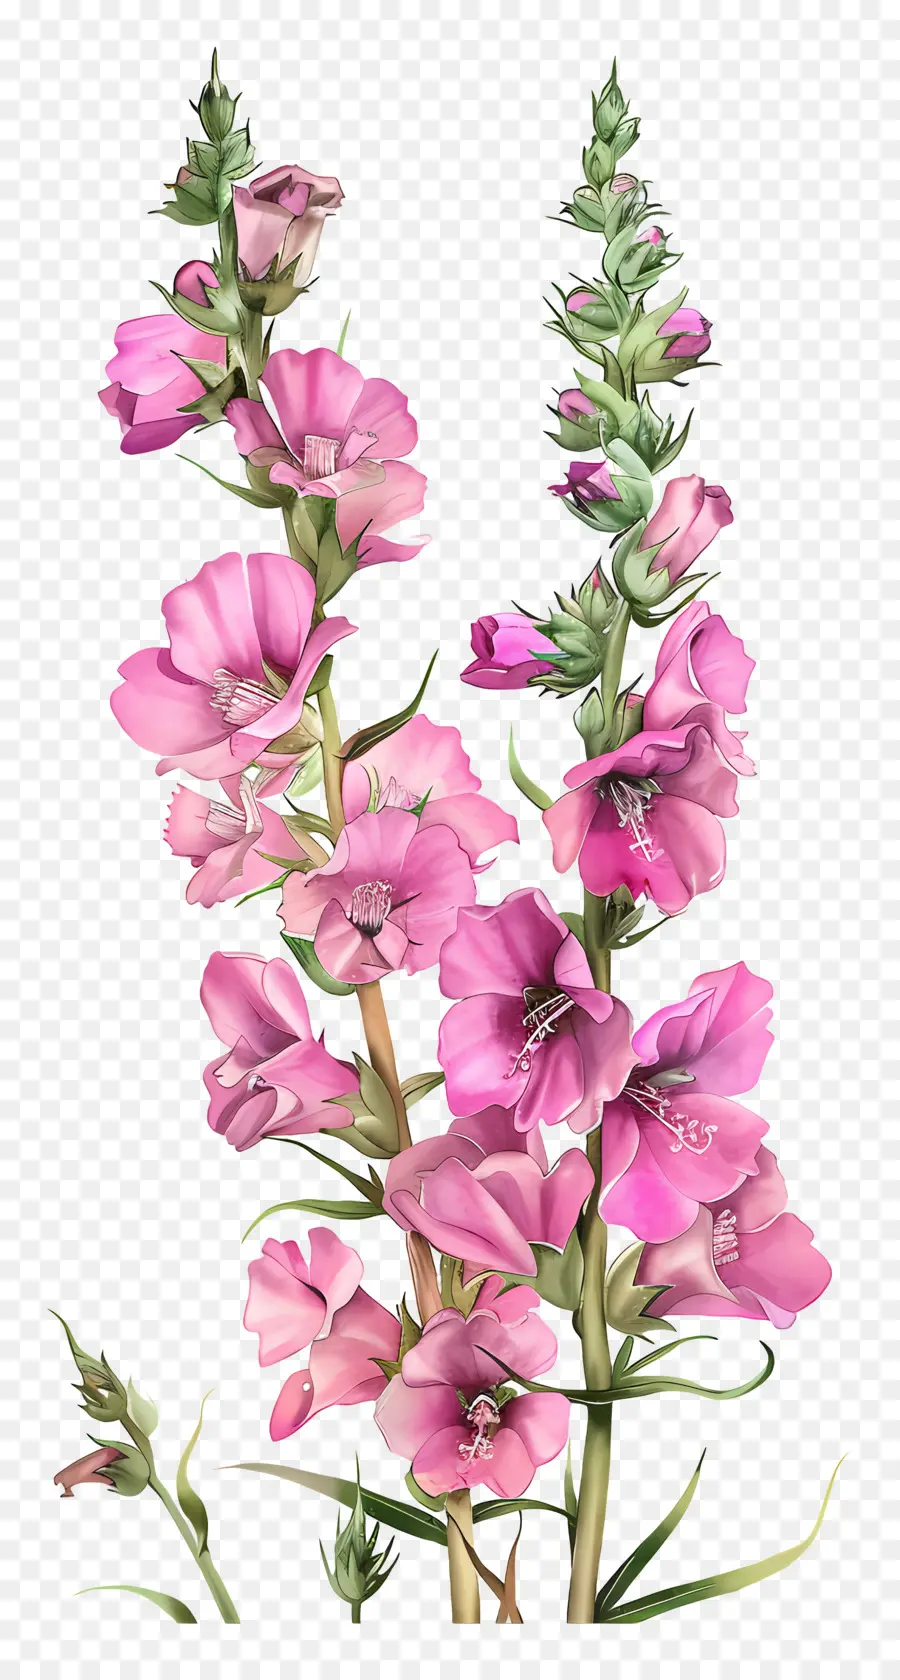 rosa Blume - Große rosa Blume, zarte Blütenblätter, klassisches Bild